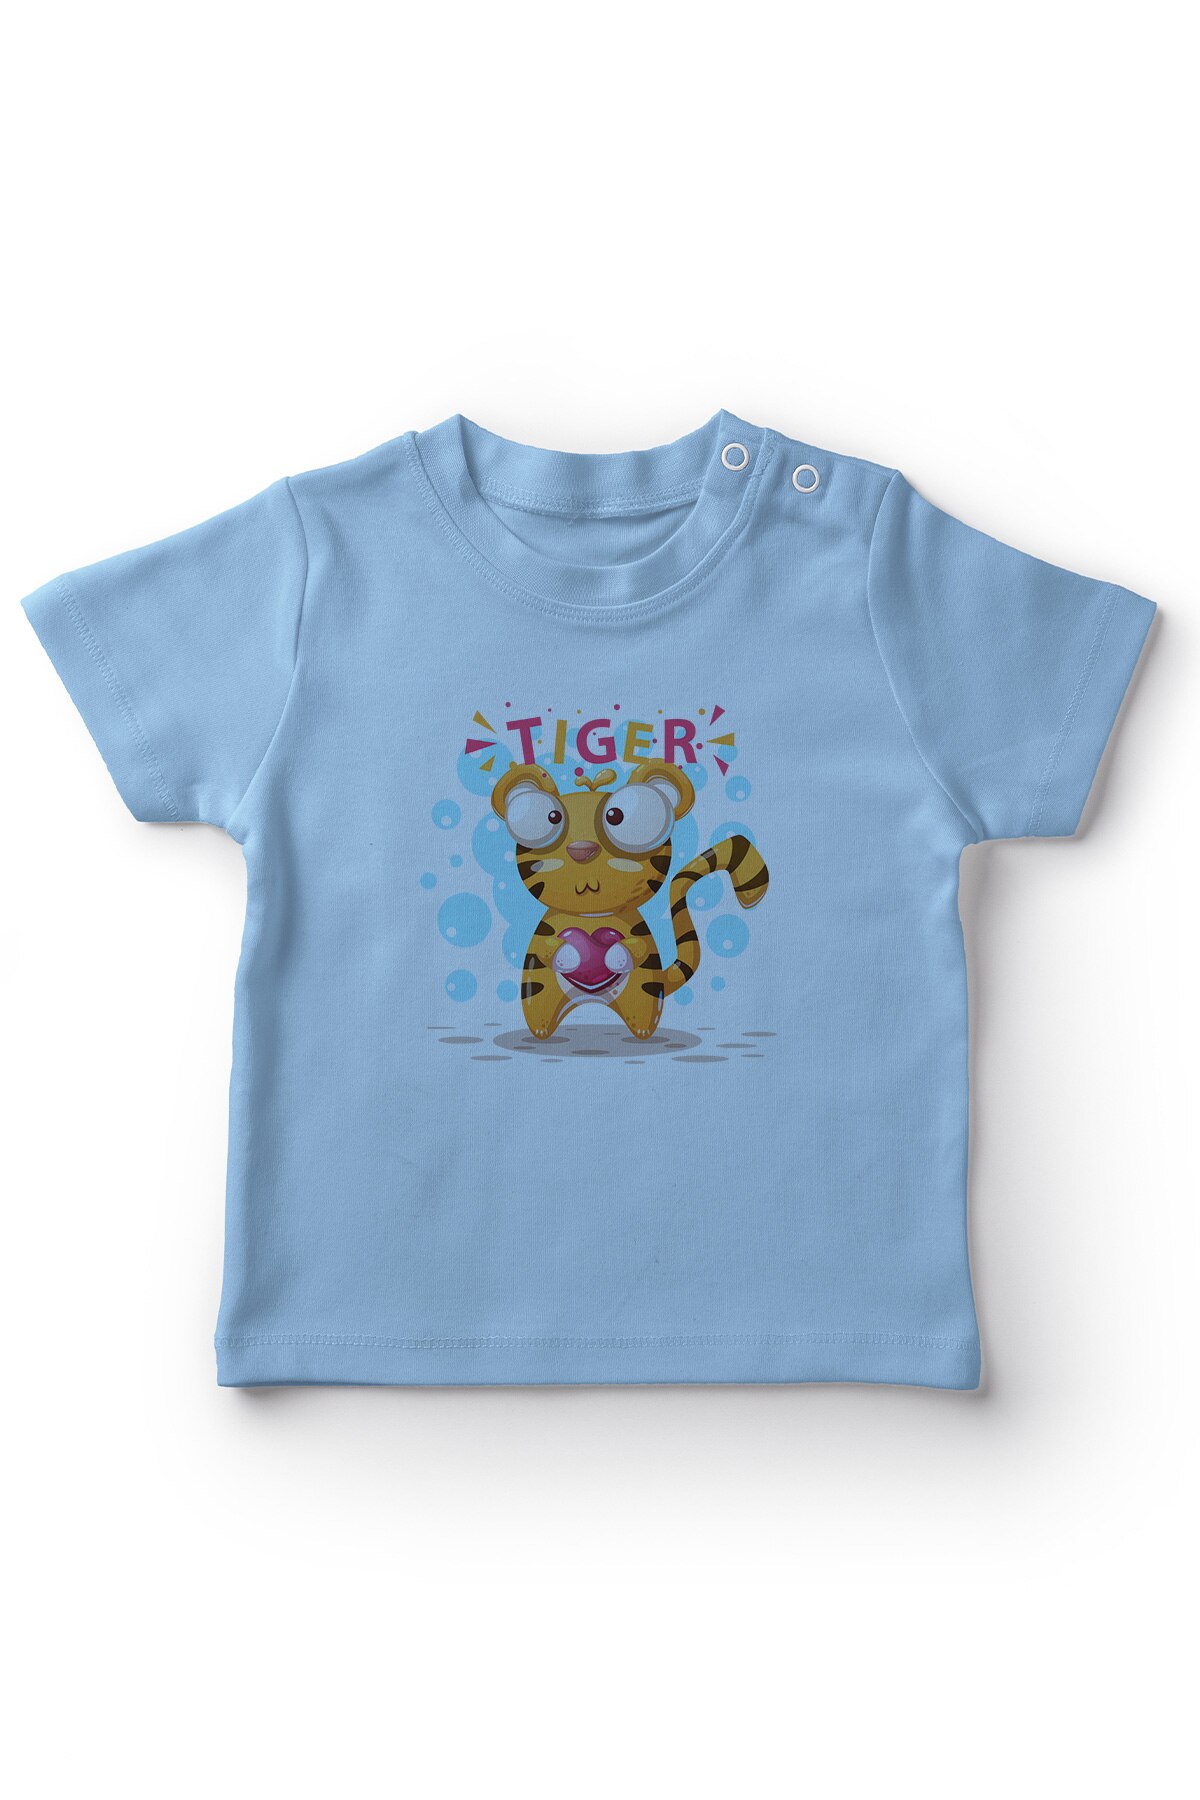 Angemiel Baby Holding Hart Tijger Baby Boy T-shirt Blauw